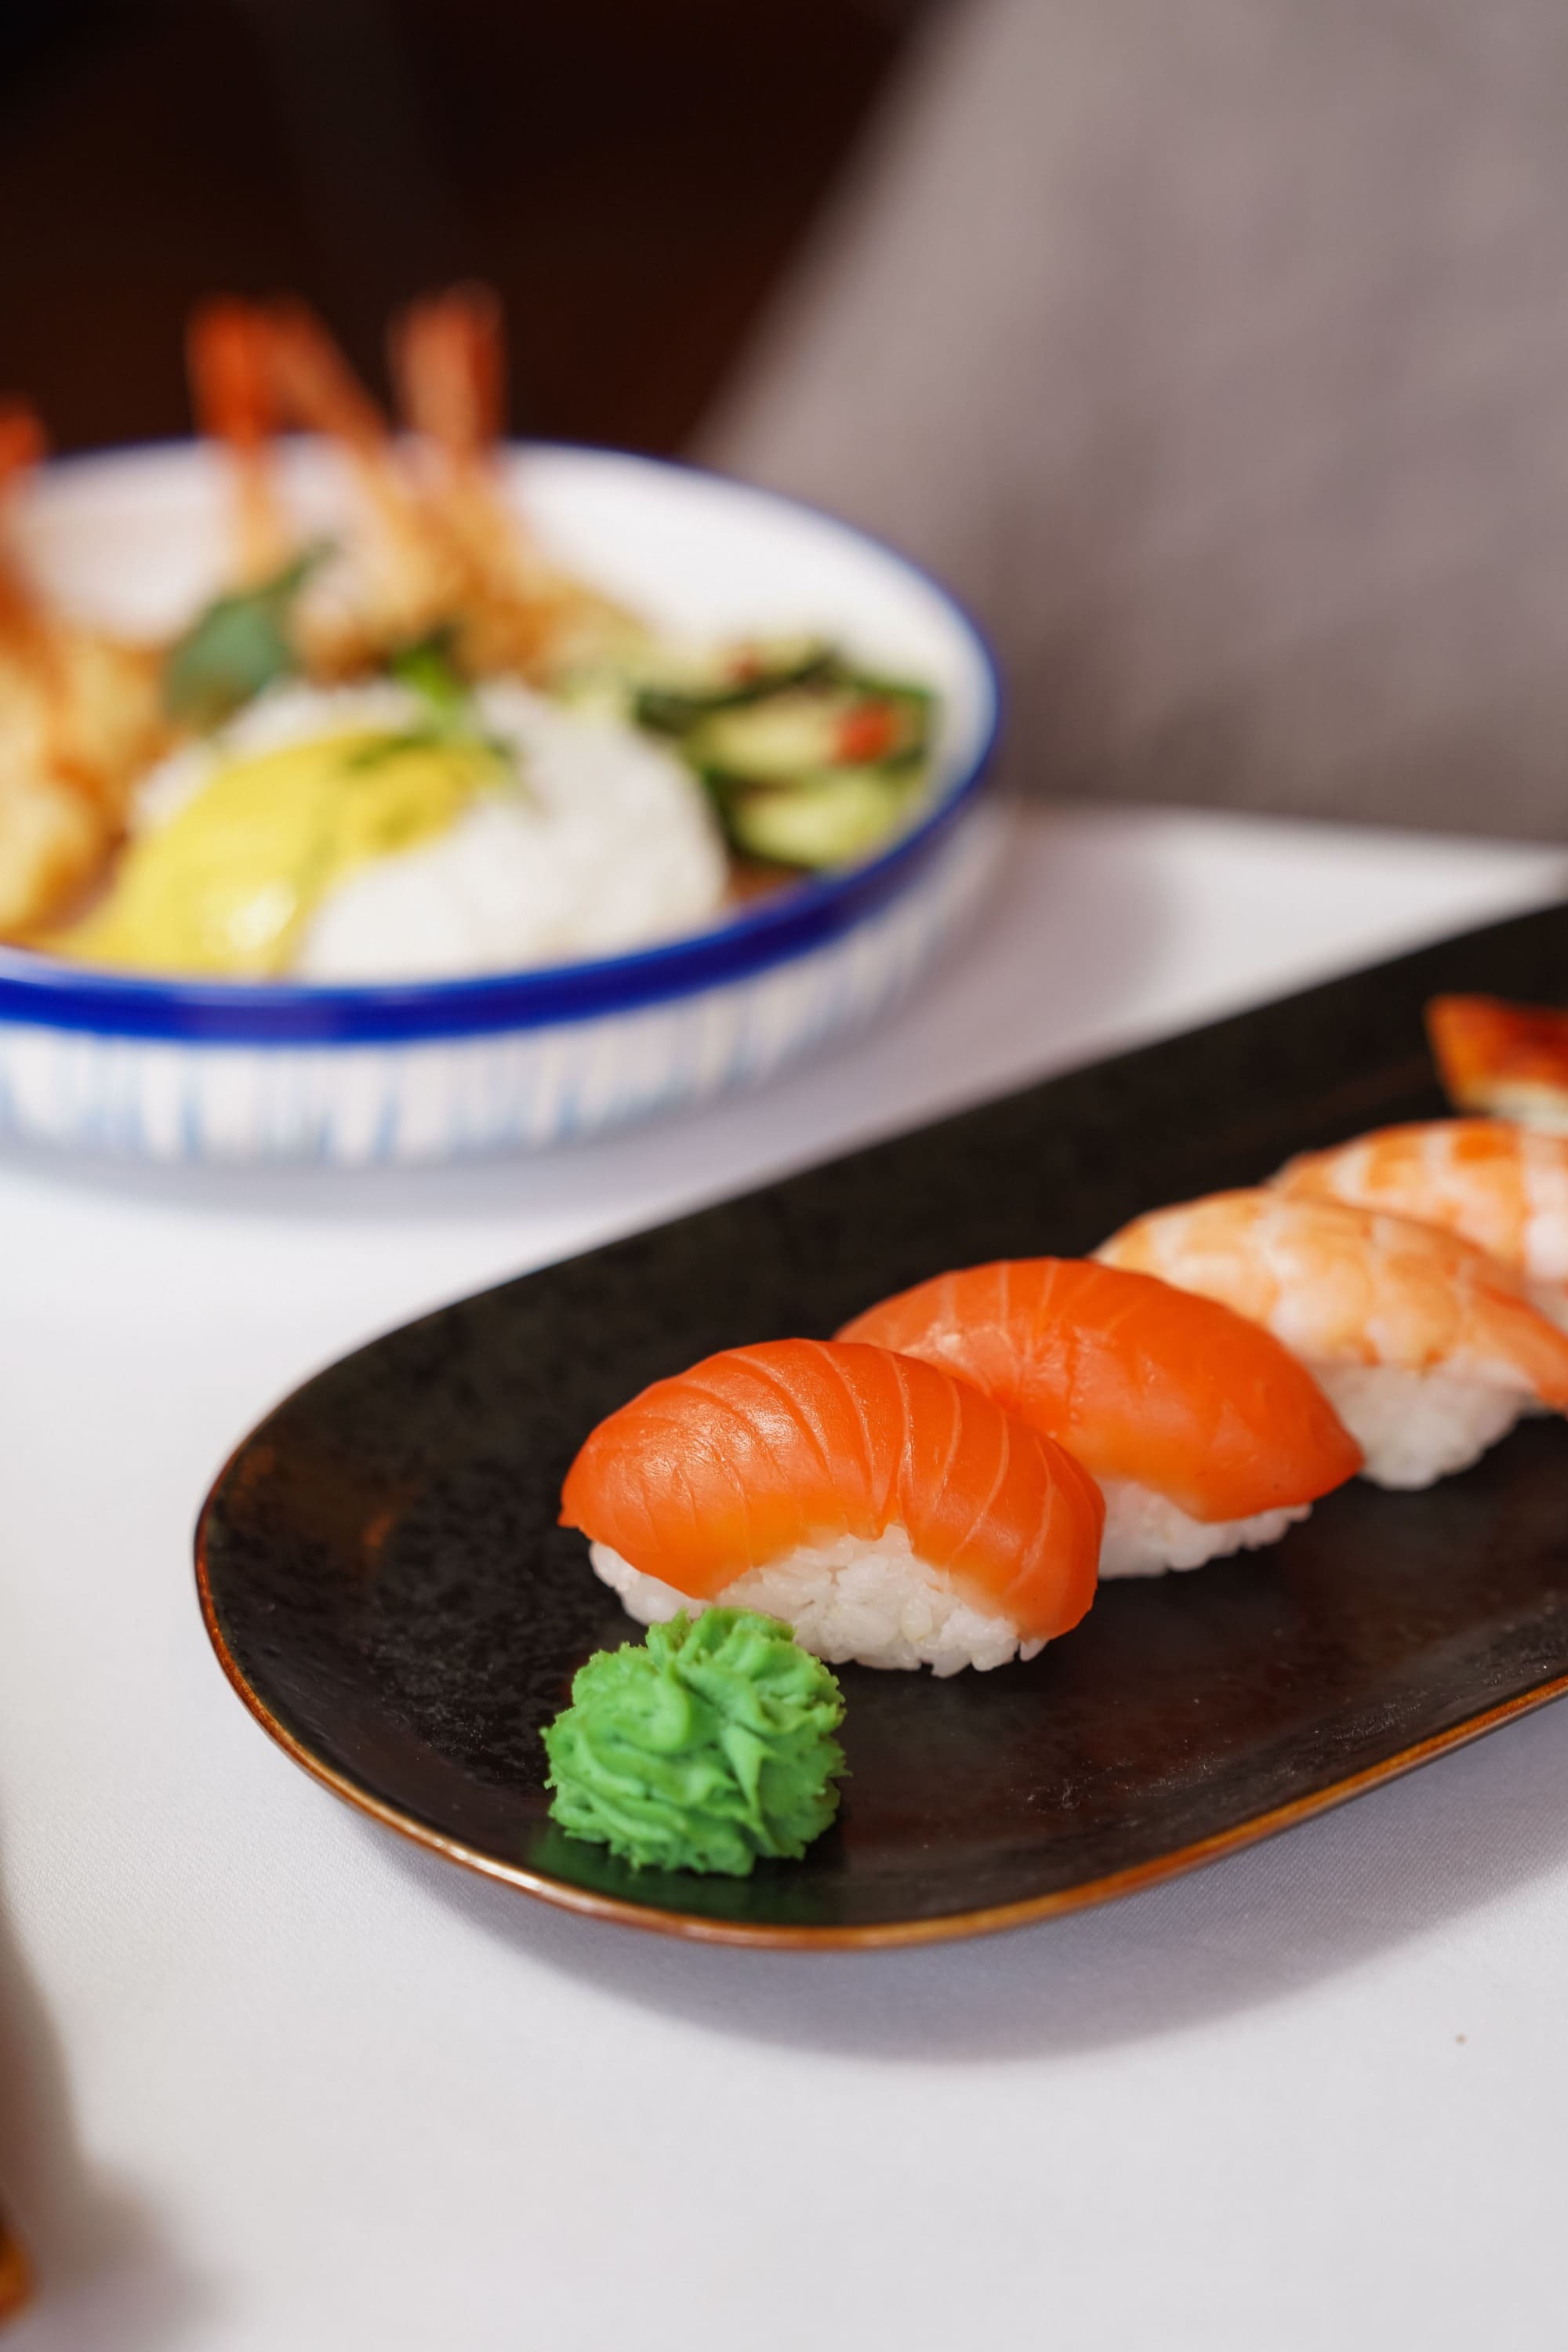 Imagen de una selección de rolls de sushi artísticamente presentados, una mezcla de colores y texturas que deleitarán tu paladar